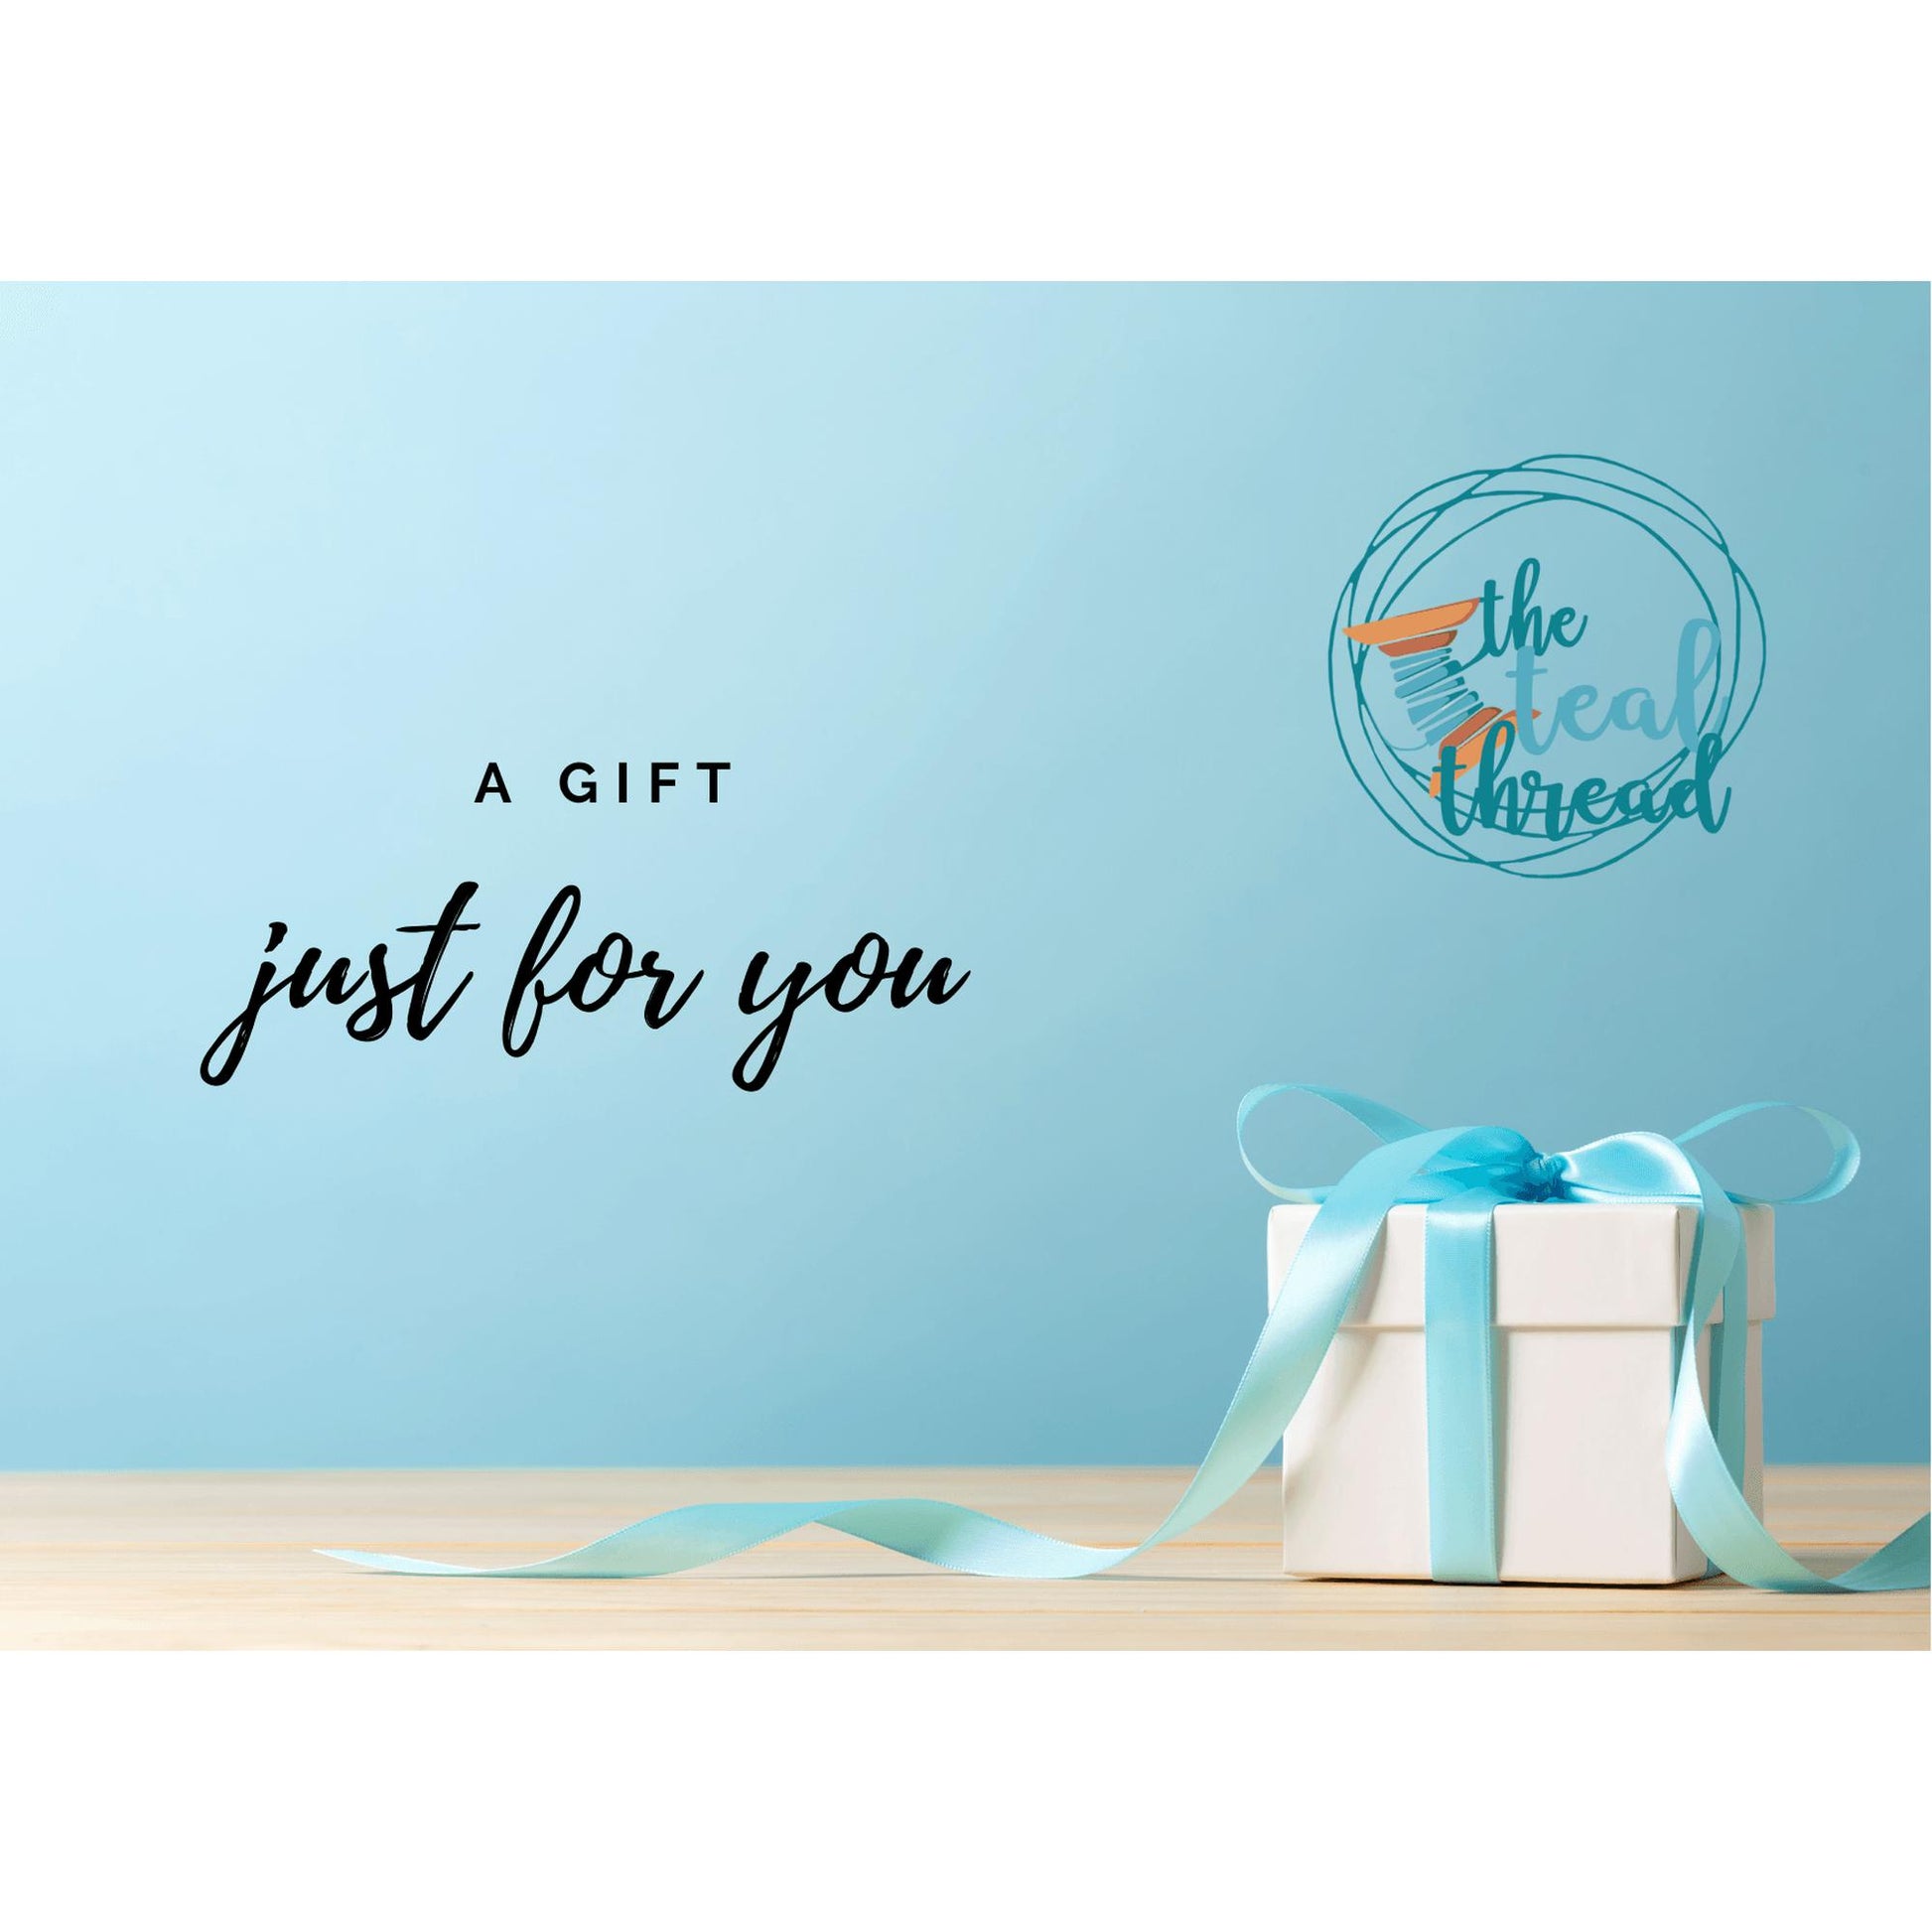 The Teal Thread Gift Card - The Teal Thread